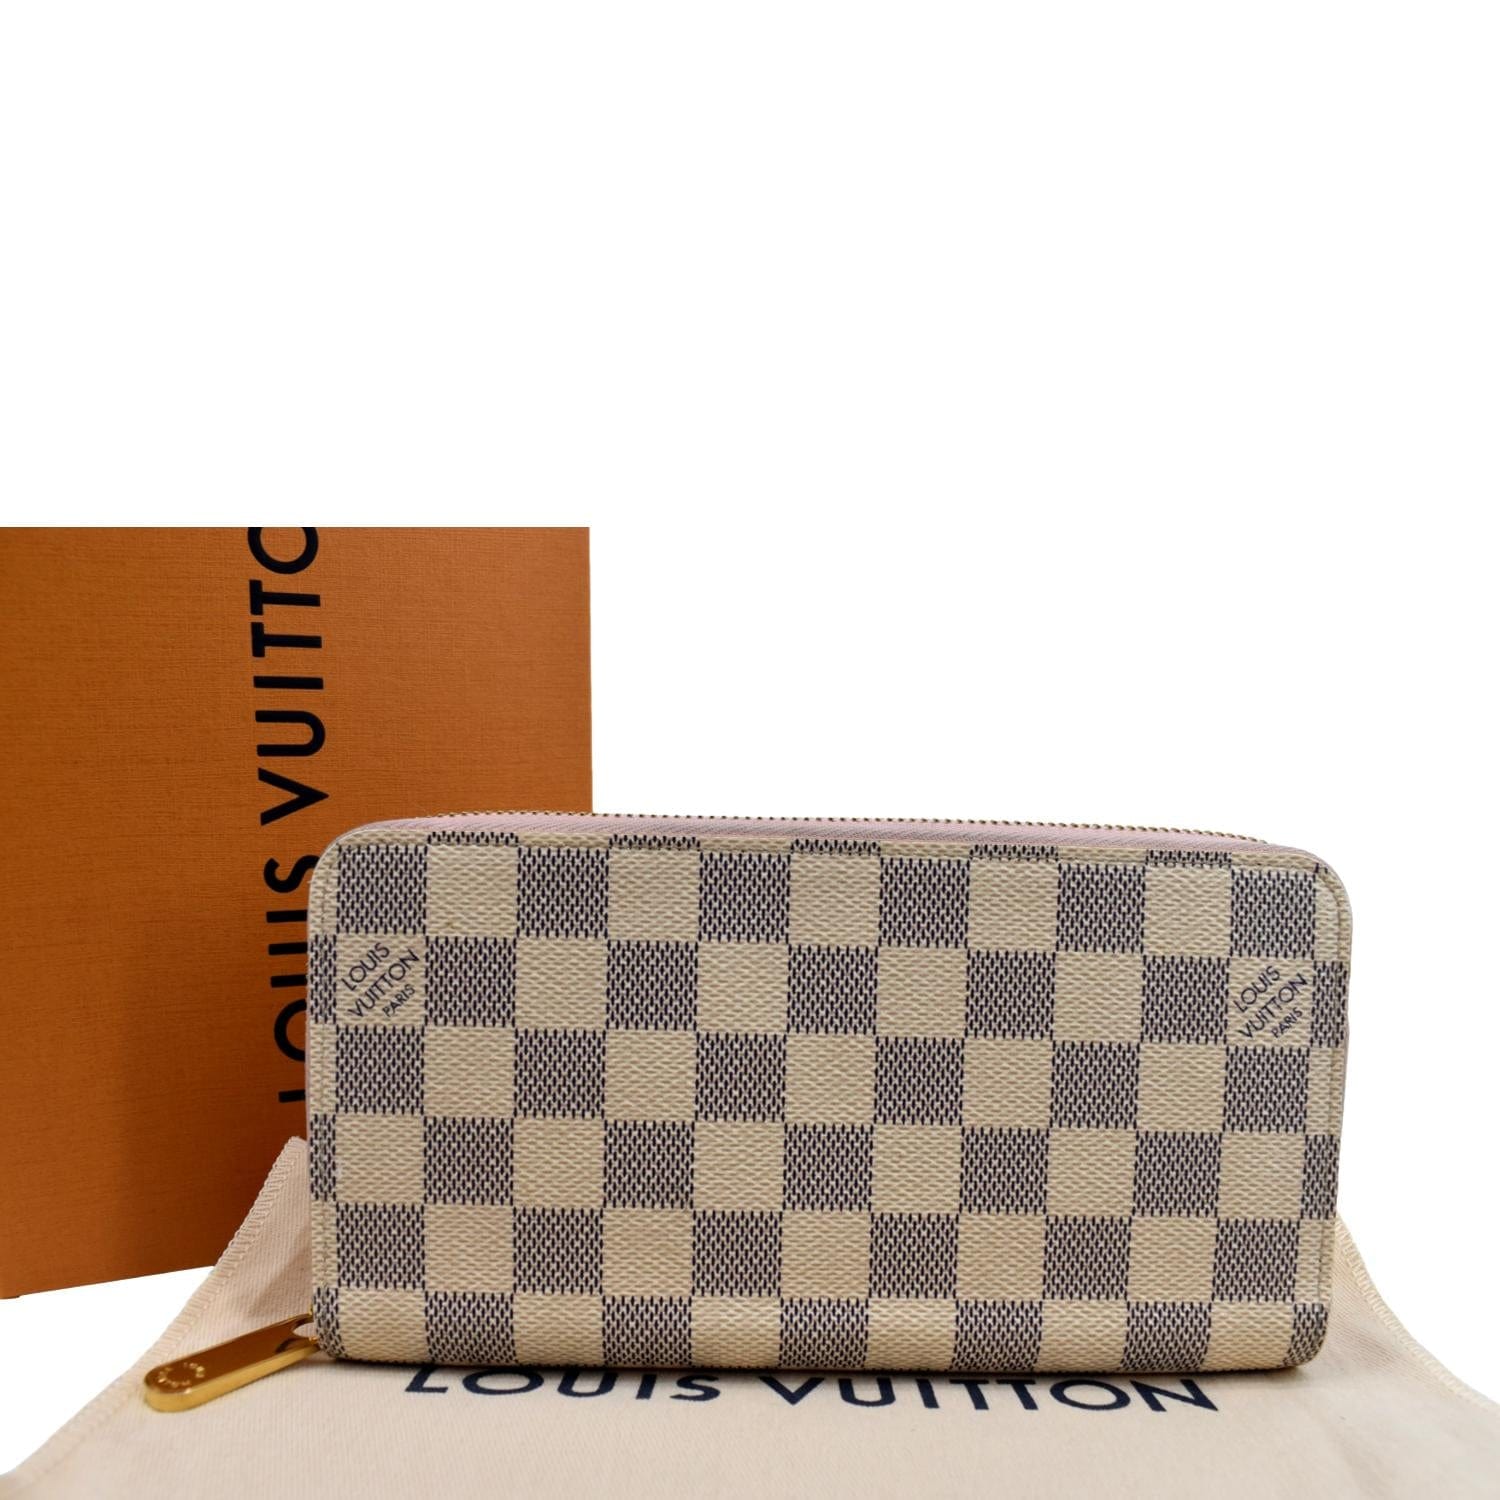 Louis Vuitton Zip Around Damier Azur Wallet White